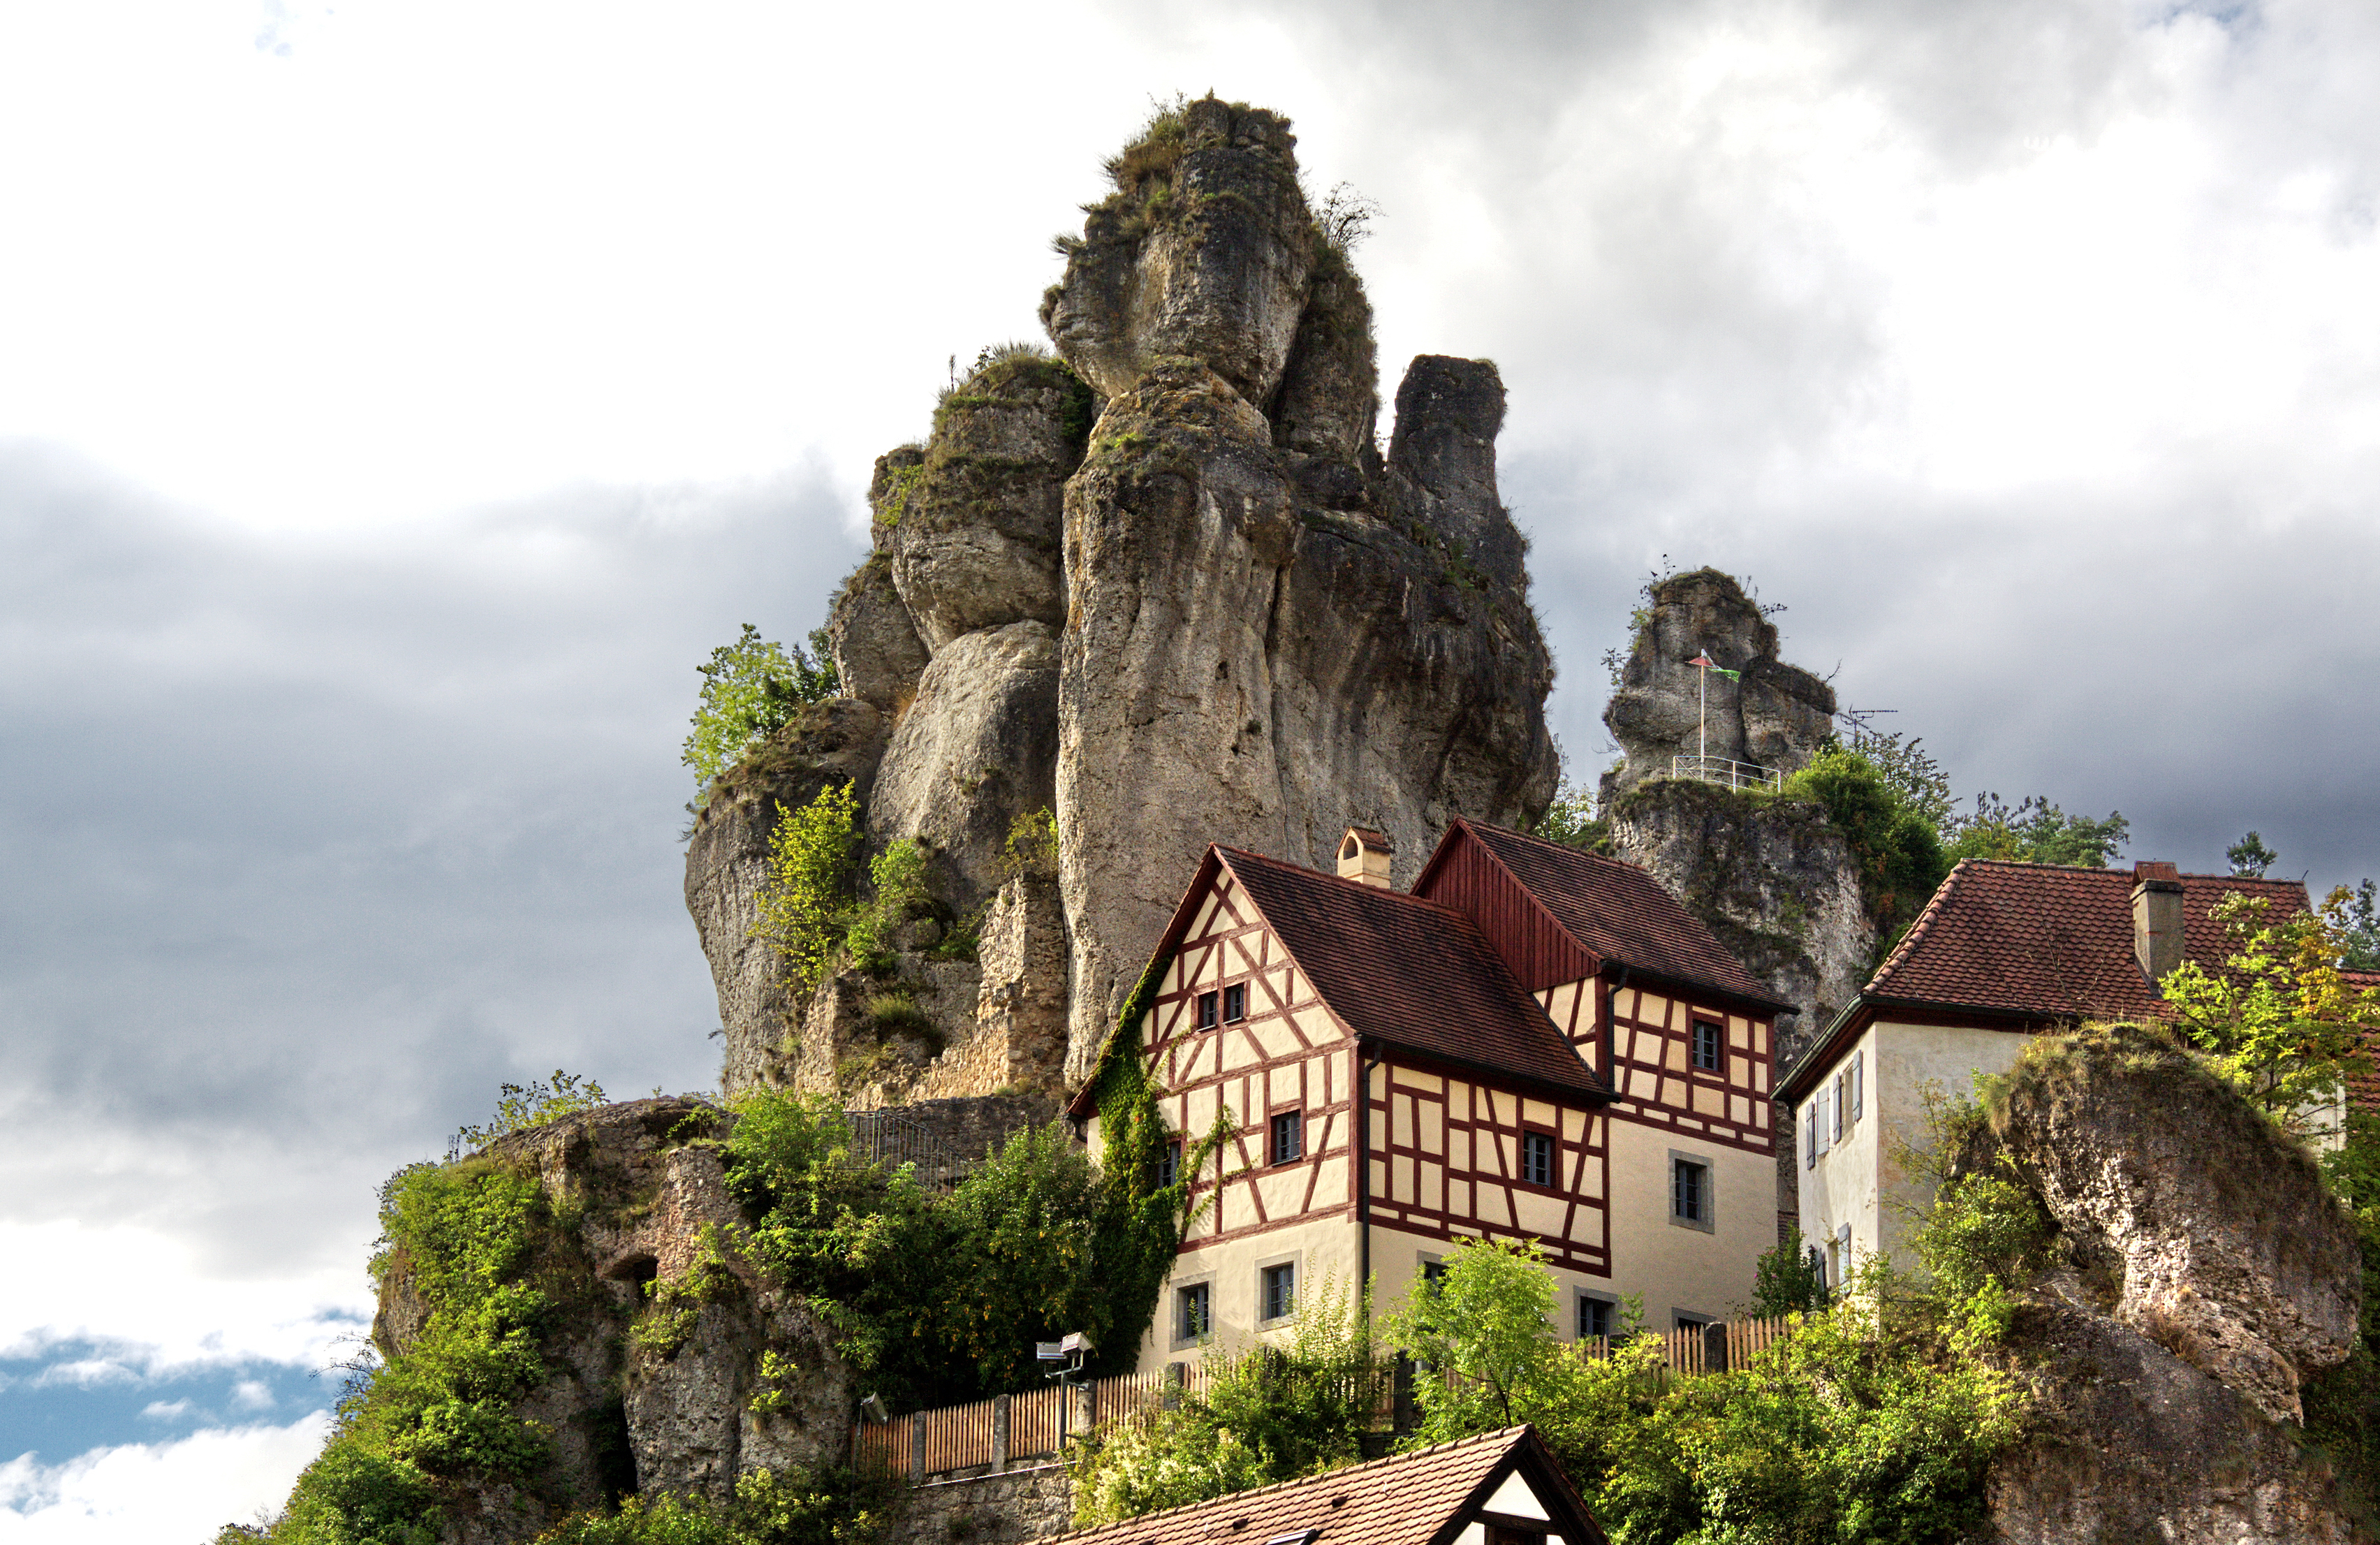 In der Fränkischen Schweiz finden sich viele markante Felsformationen wie diese (Foto: Panthermedia.net/Eberhard Starosczik)